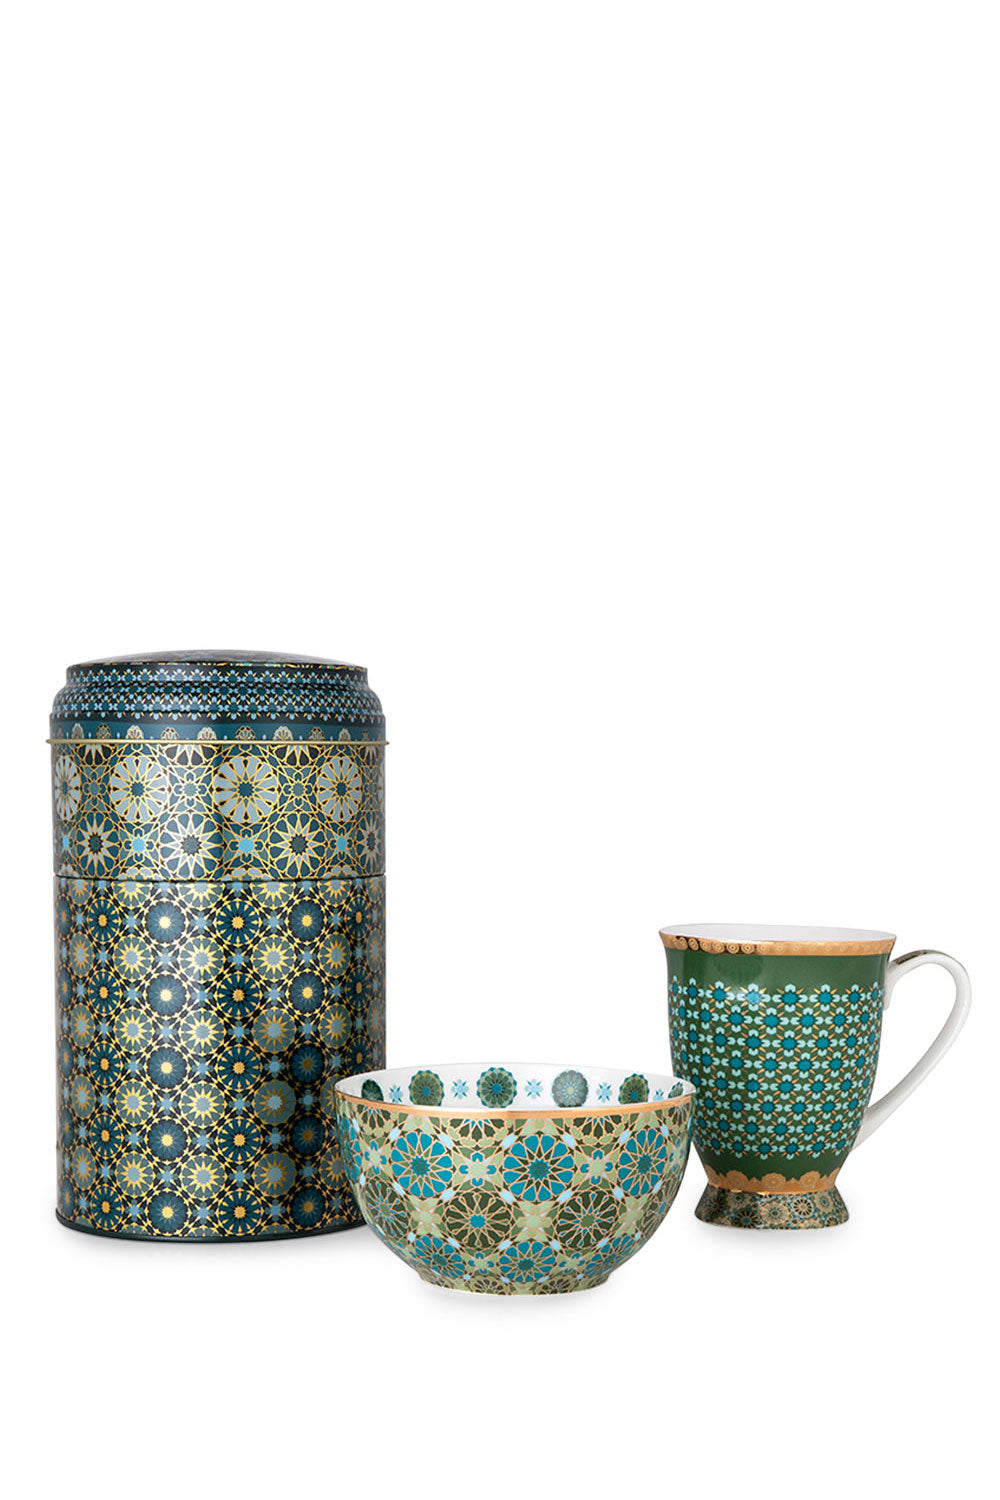 Andalusia Tin Box with Mug and Bowl